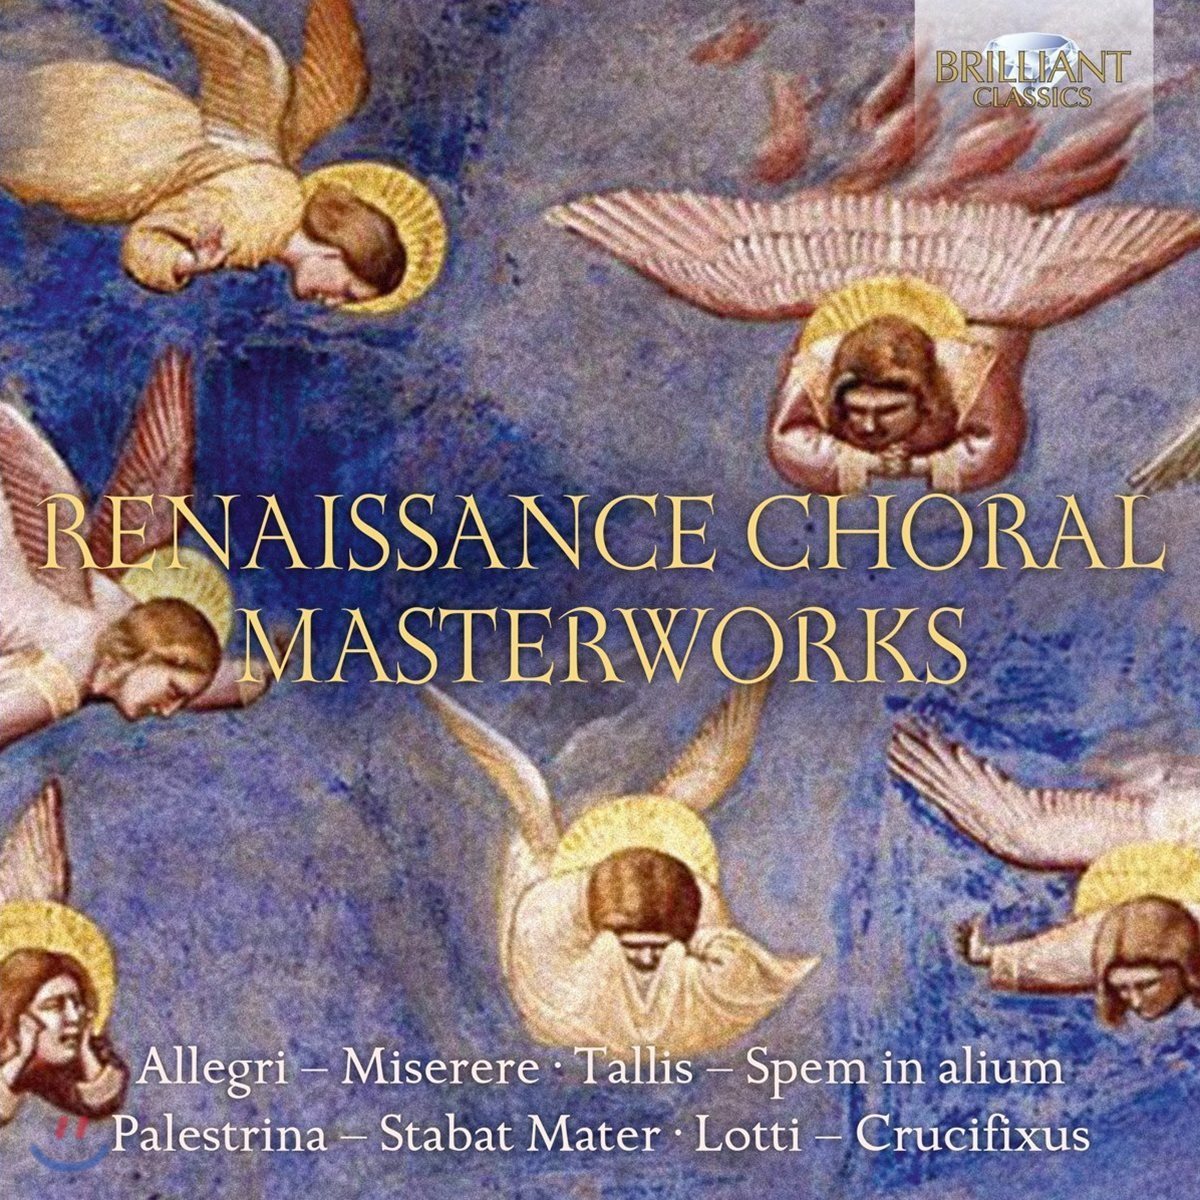 르네상스 합창 음악 작품집 - 알레그리 / 탈리스 / 팔레스트리나 / 로티 (Renaissance Choral Masterworks)